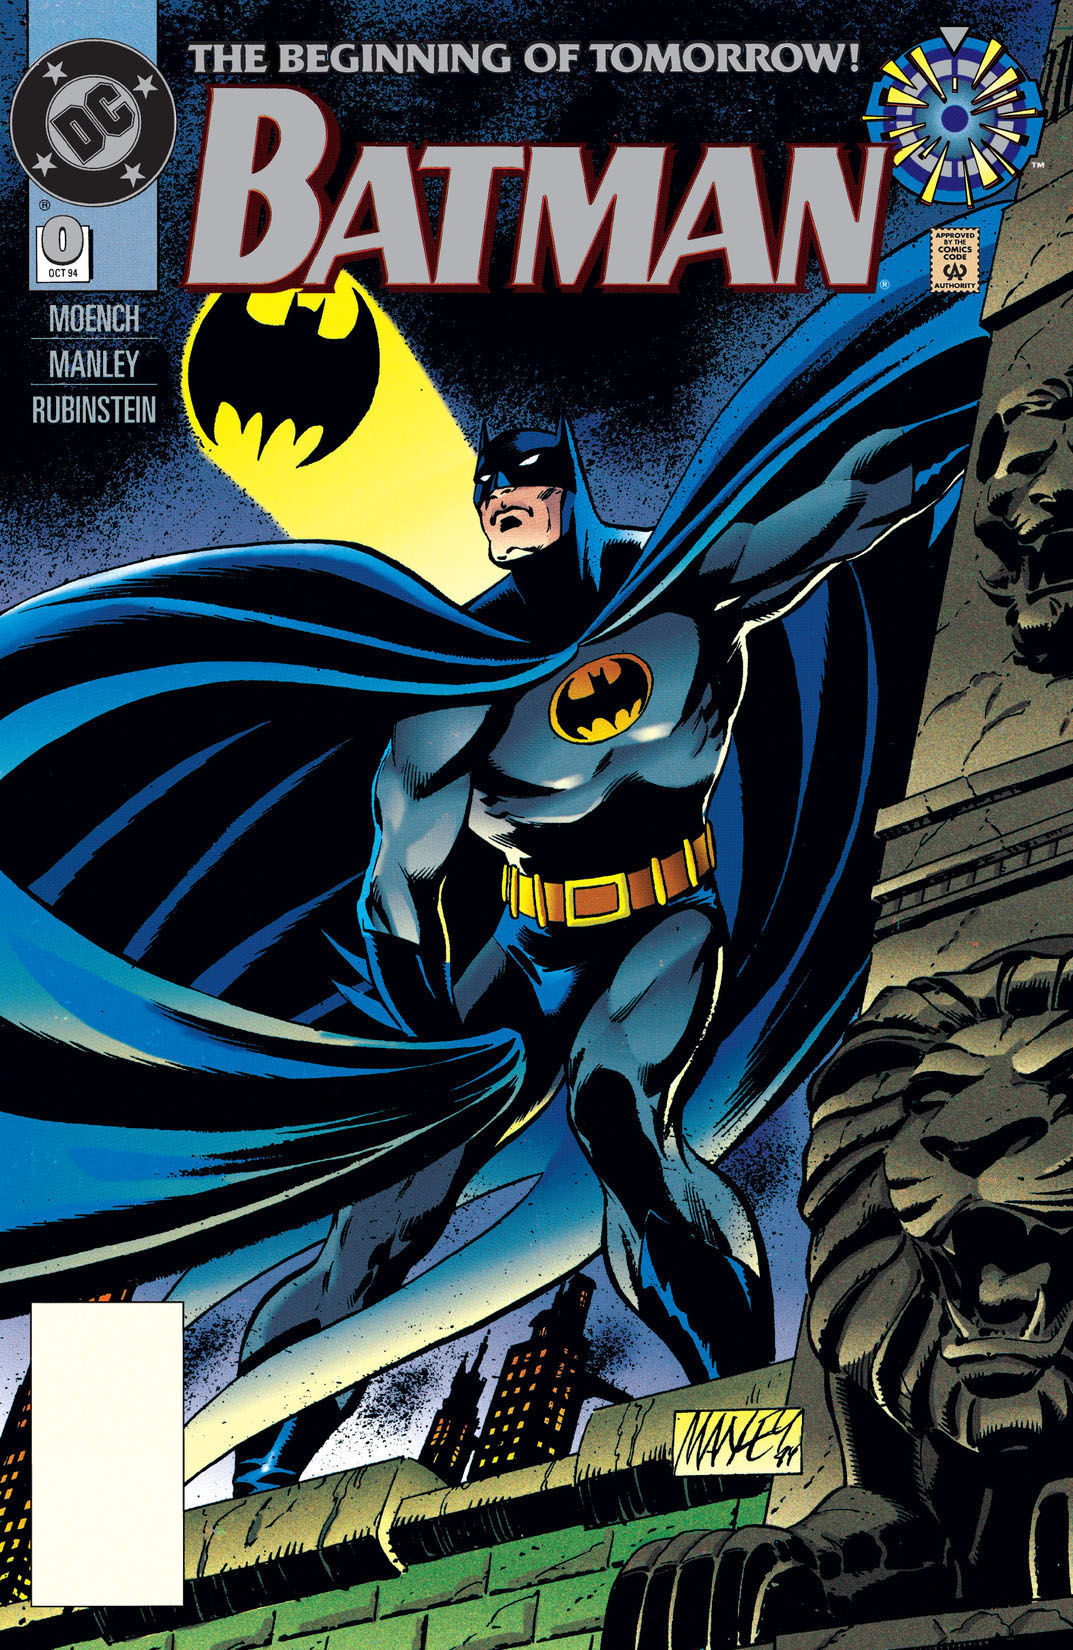 Batman (1940-) #0 preview images